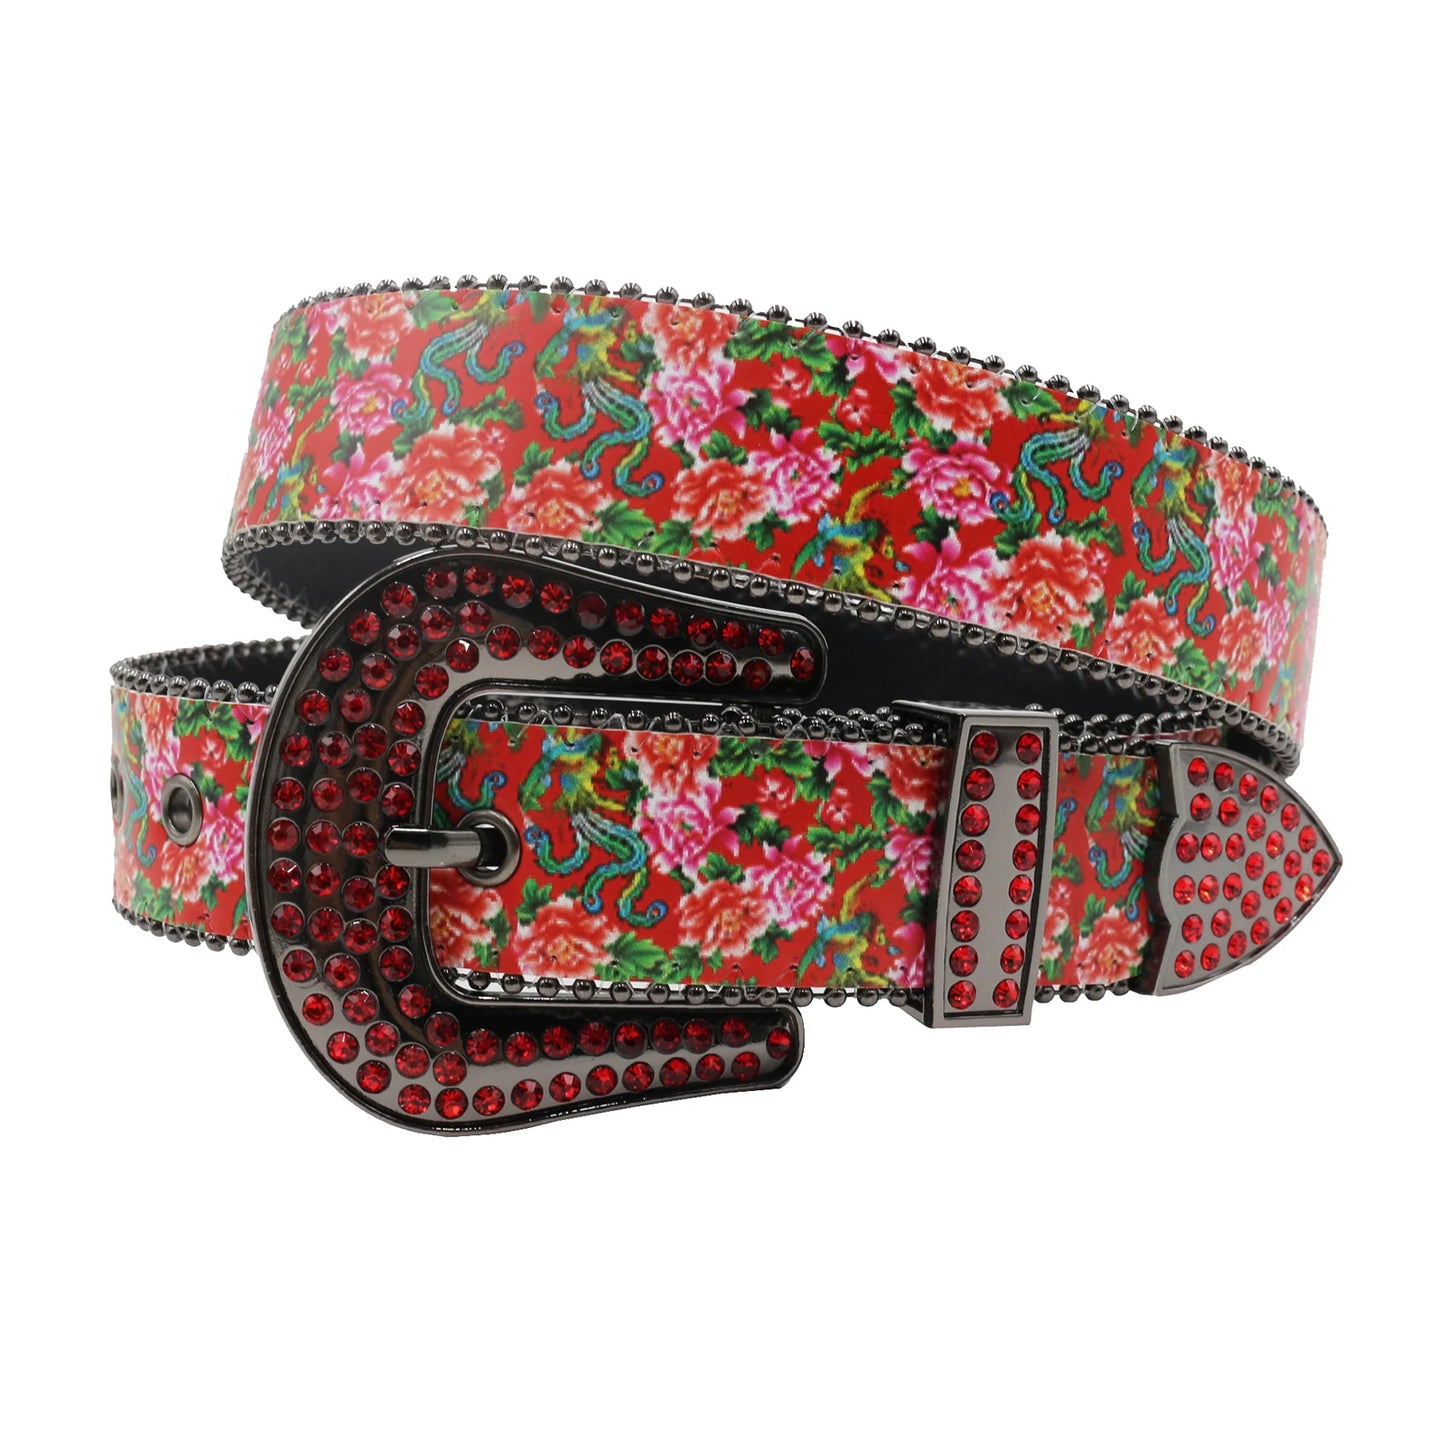 TEEK - Flower Print Belts BELT theteekdotcom MDH-Red 125cm/49.21in 